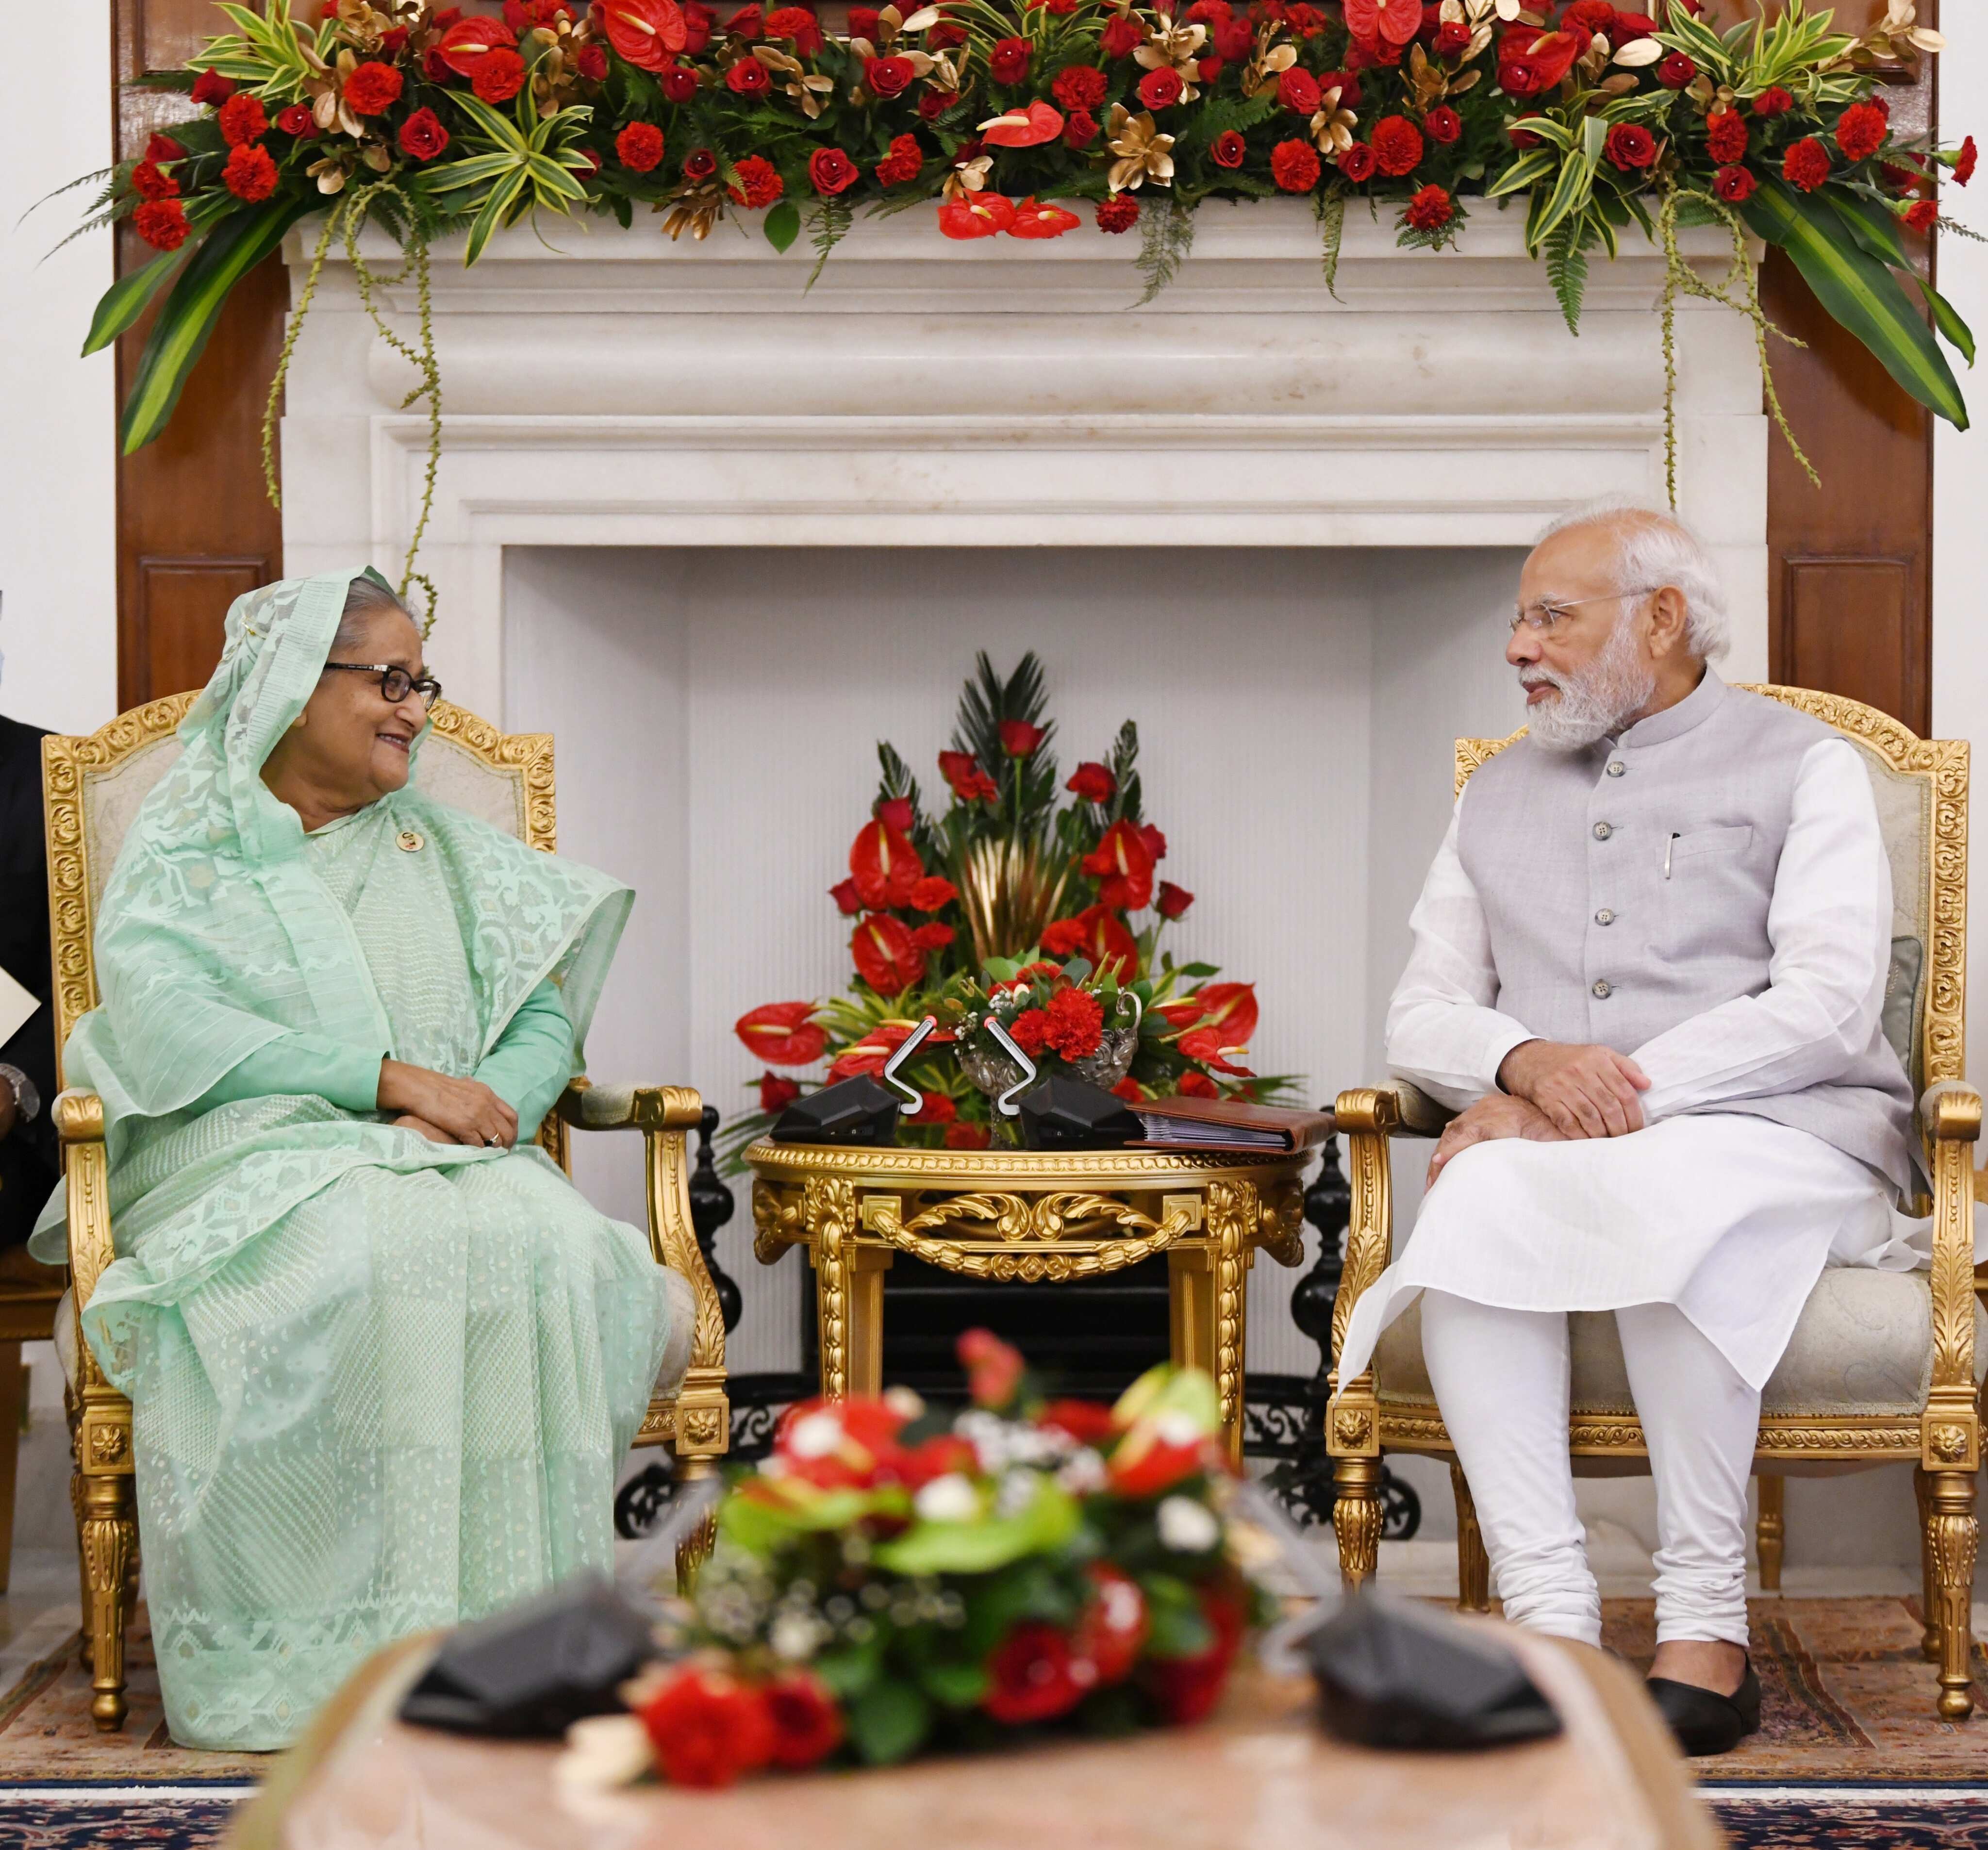 India, Bangladesh ink seven pacts